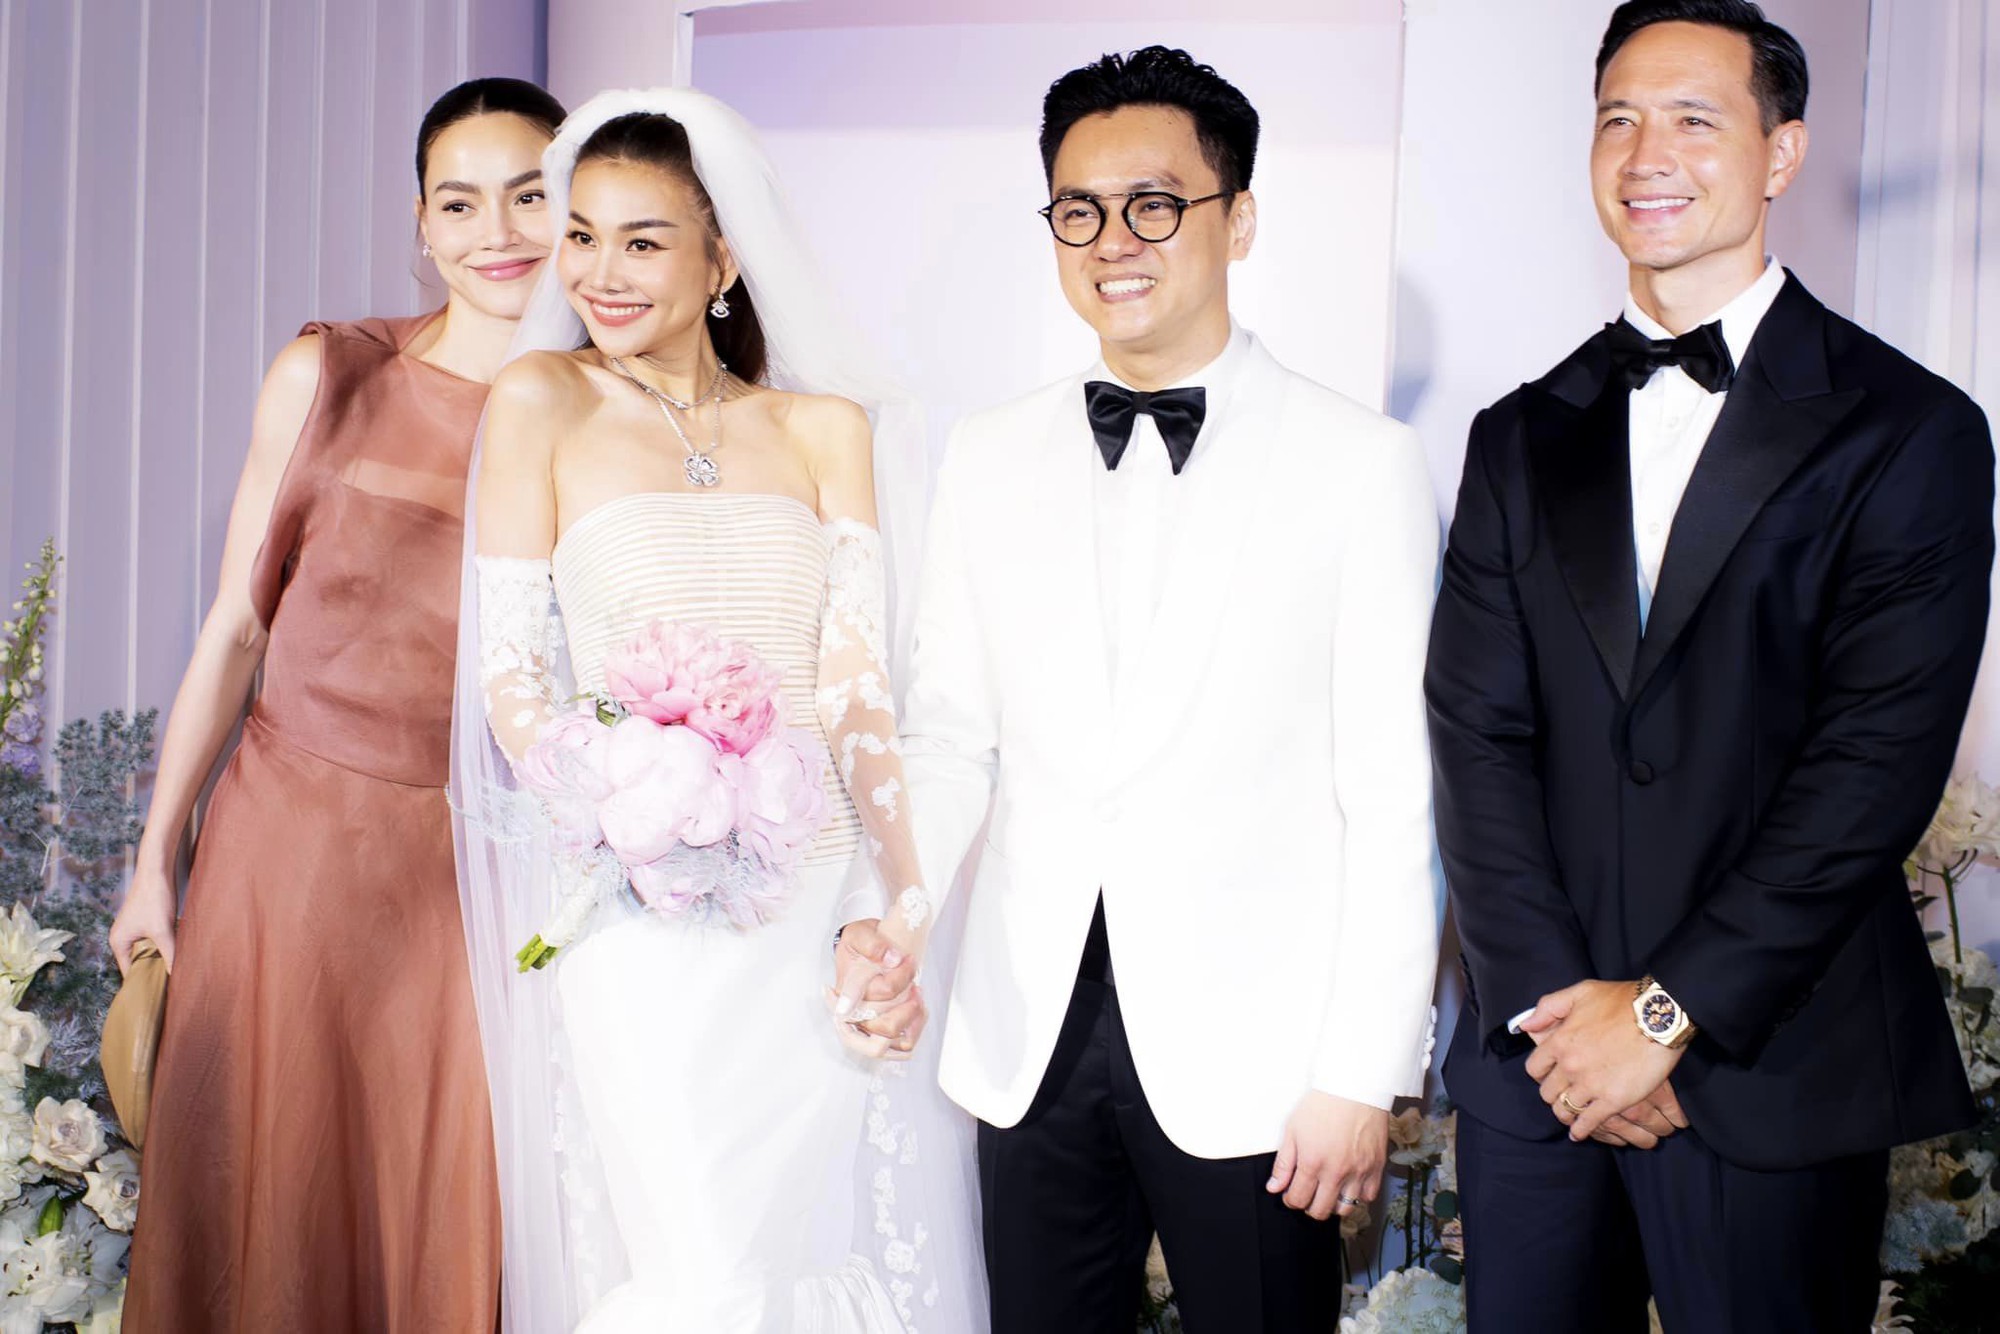 Hồ Ngọc Hà 'xả kho ảnh' cùng vợ chồng Thanh Hằng, hé lộ điều đặc biệt trong đám cưới sắp tới với Kim Lý - Ảnh 2.